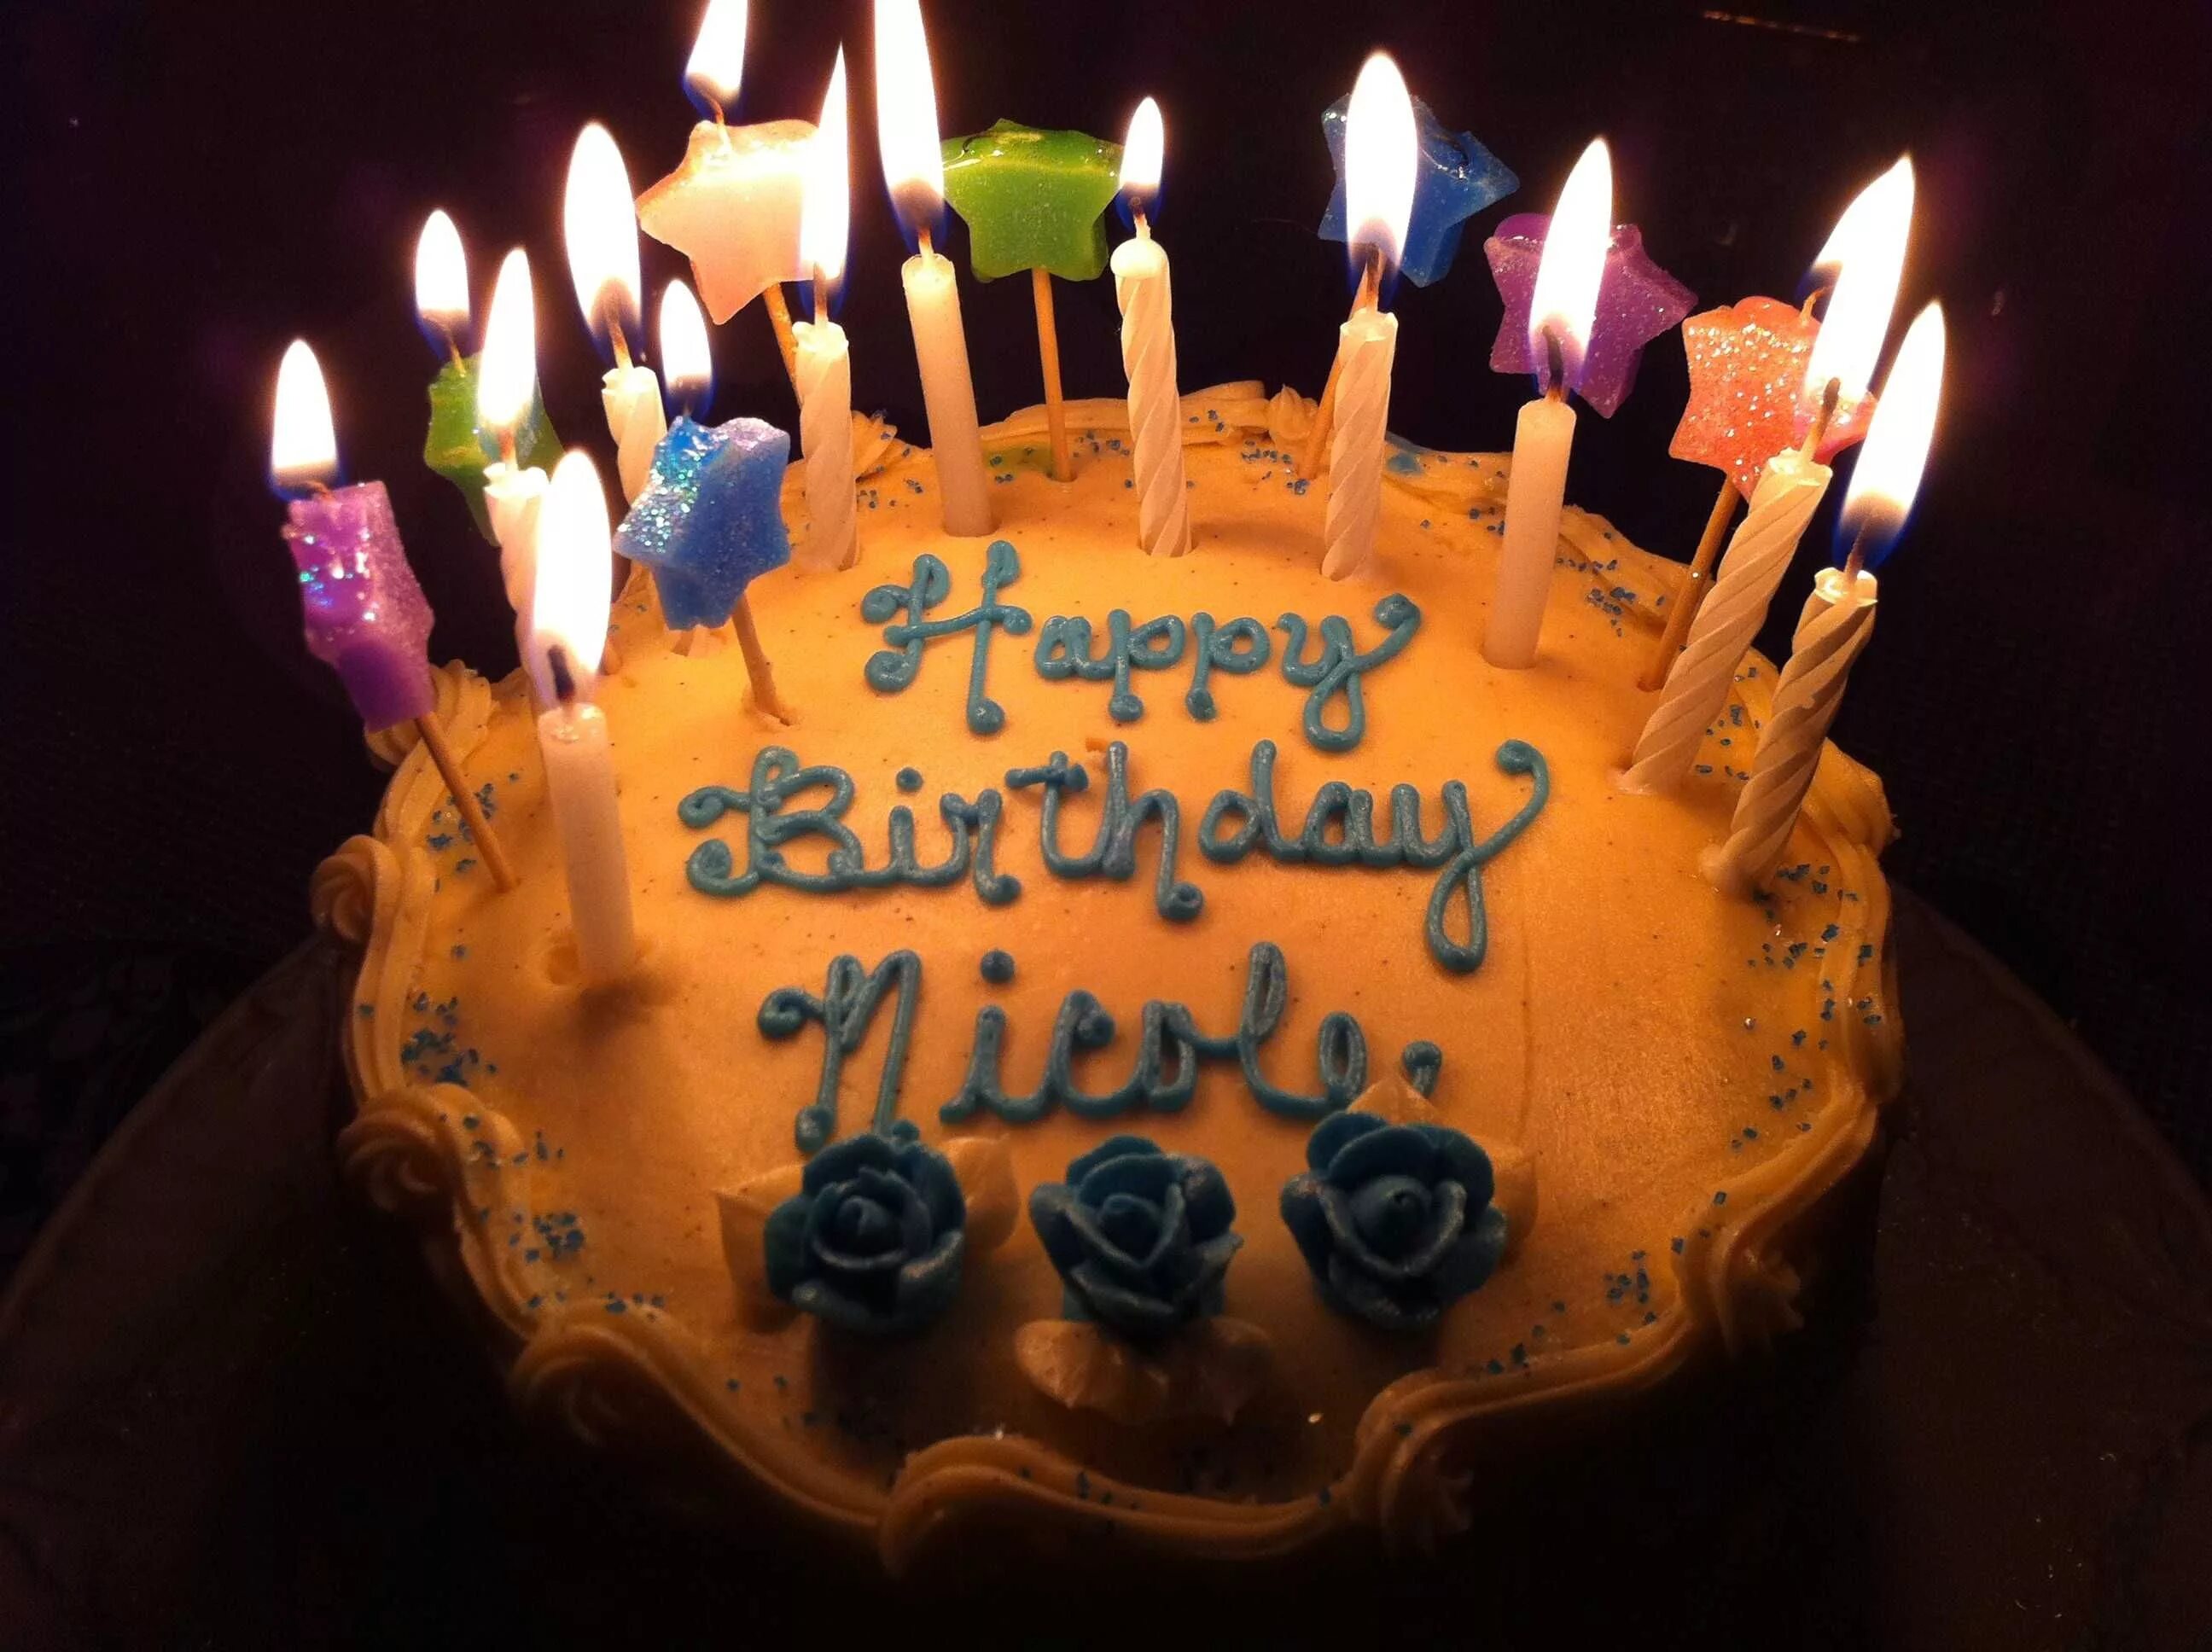 A birthday. Торт с днем рождения!. Праздничный торт на день рождения. Свечи для торта. Открытка с днём рождения торт.